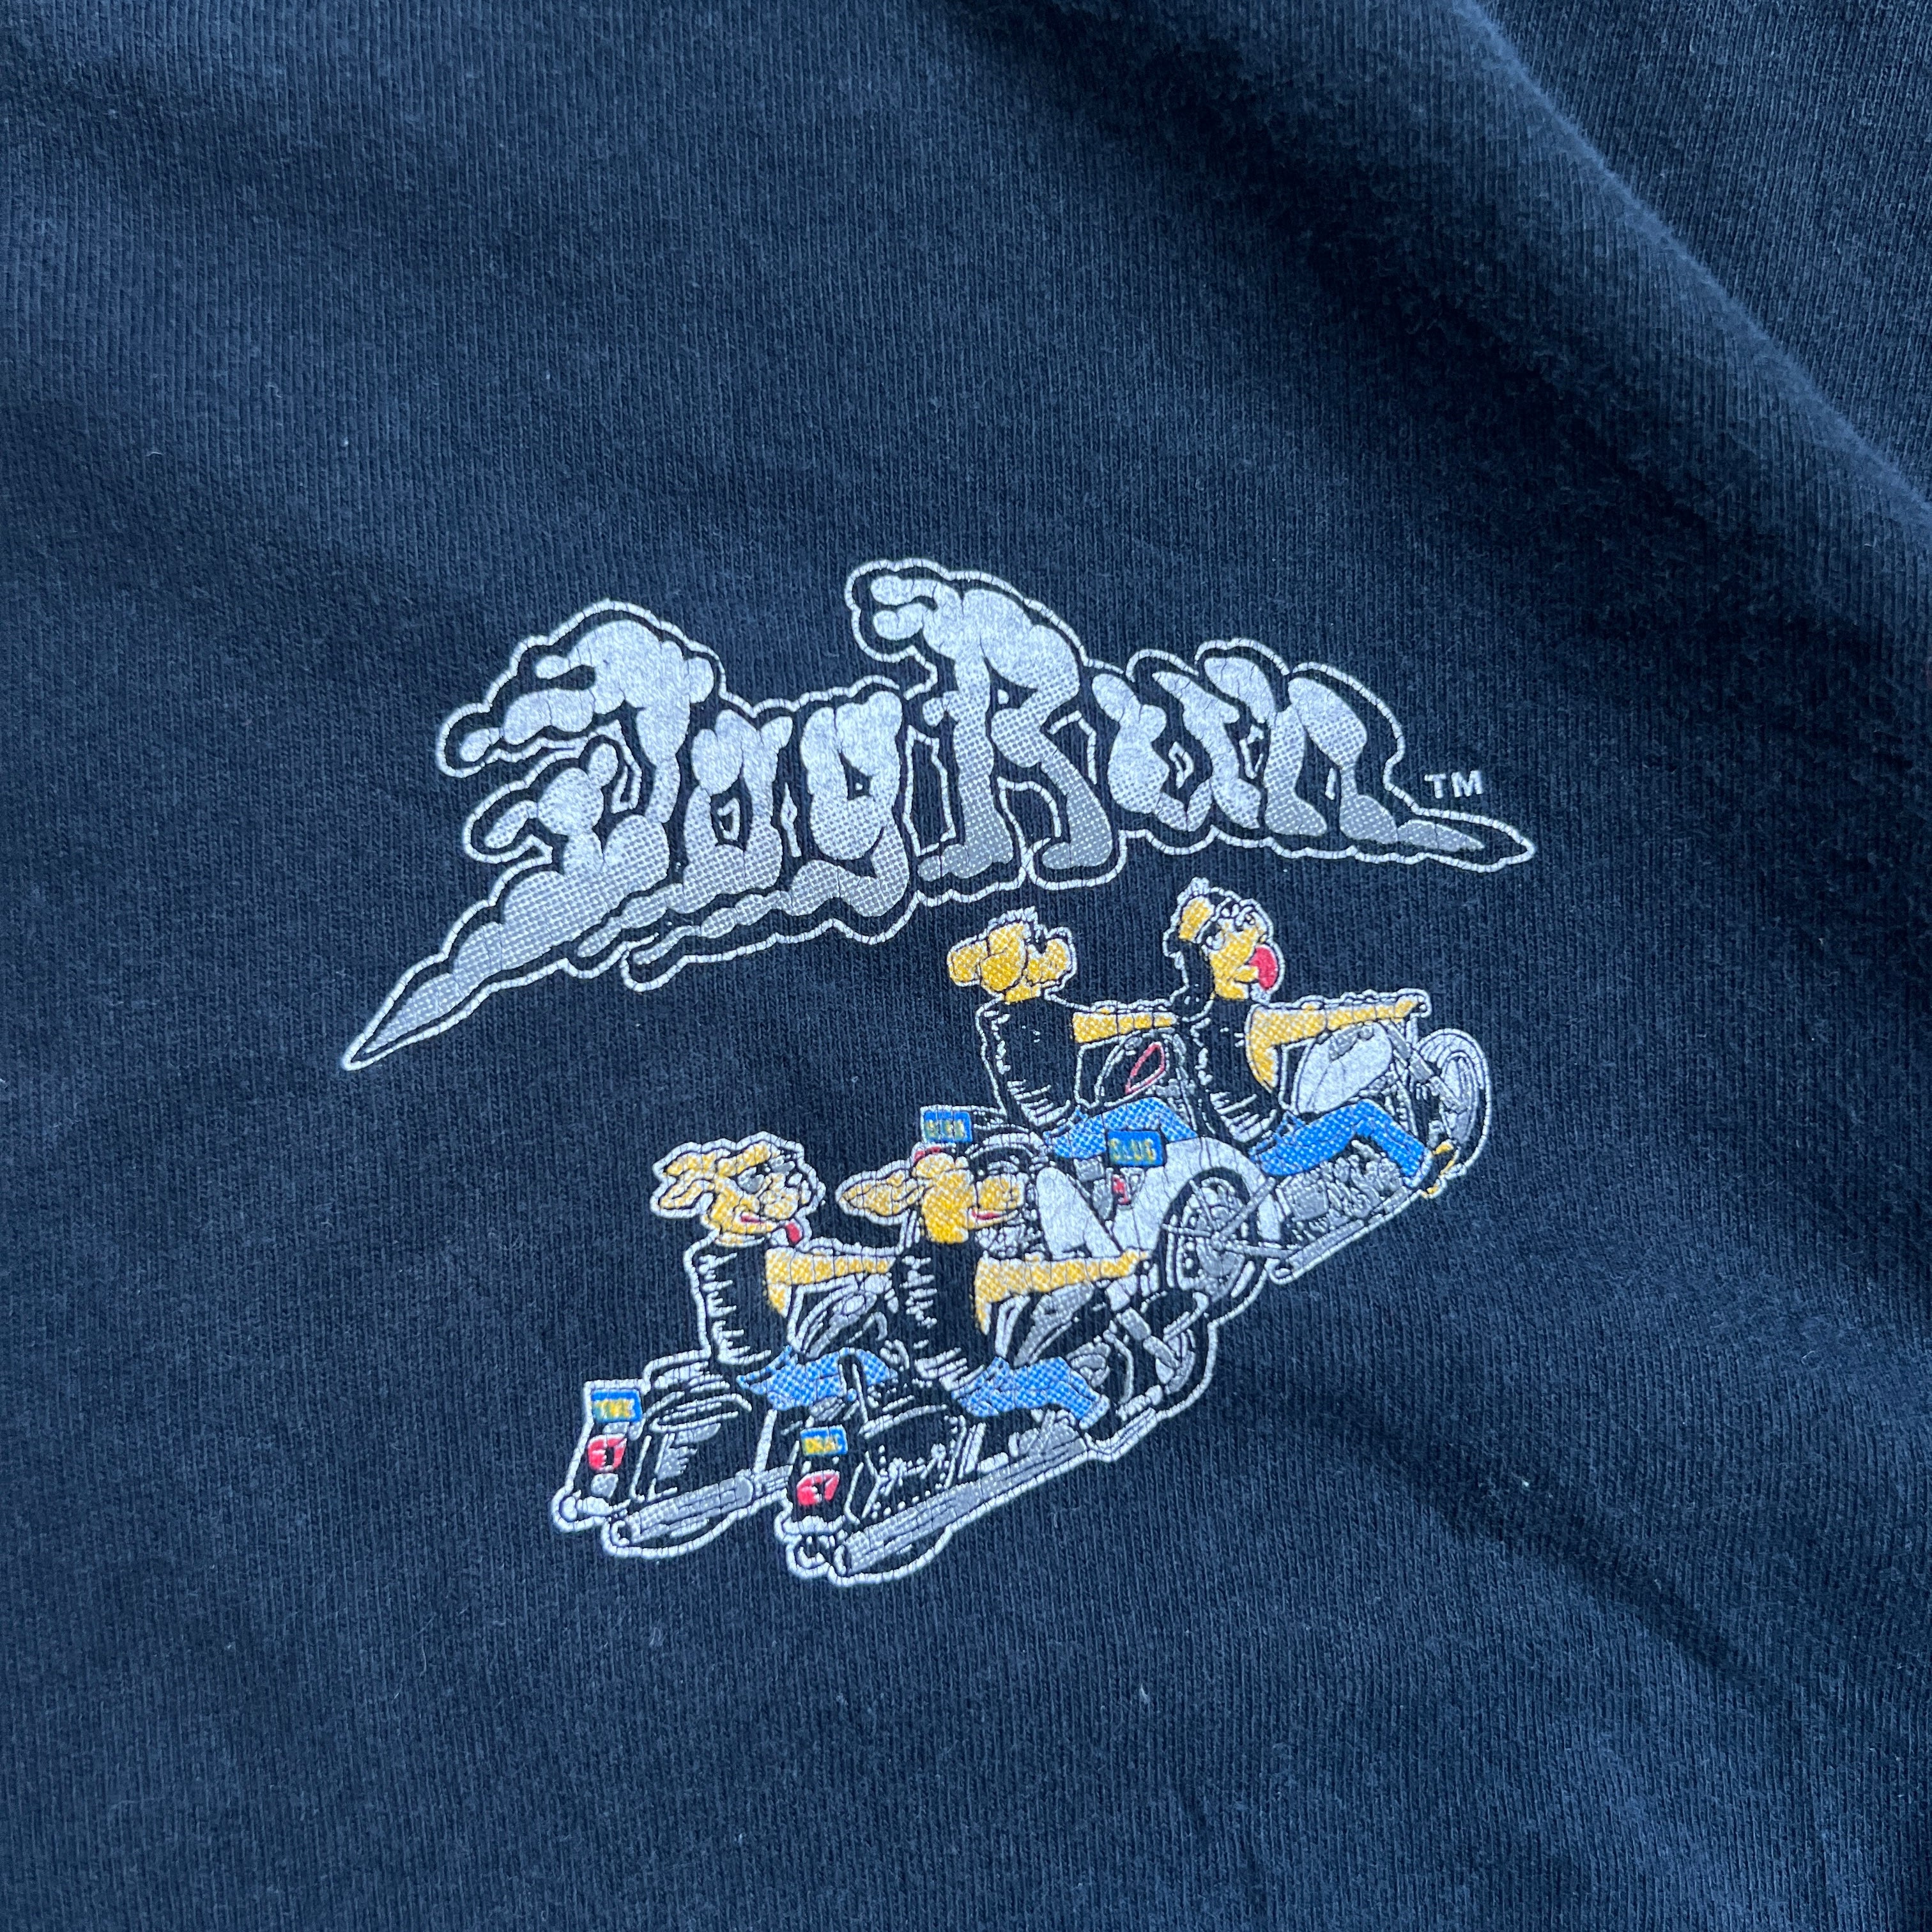 2008 Dog Run Biker T-Shirt